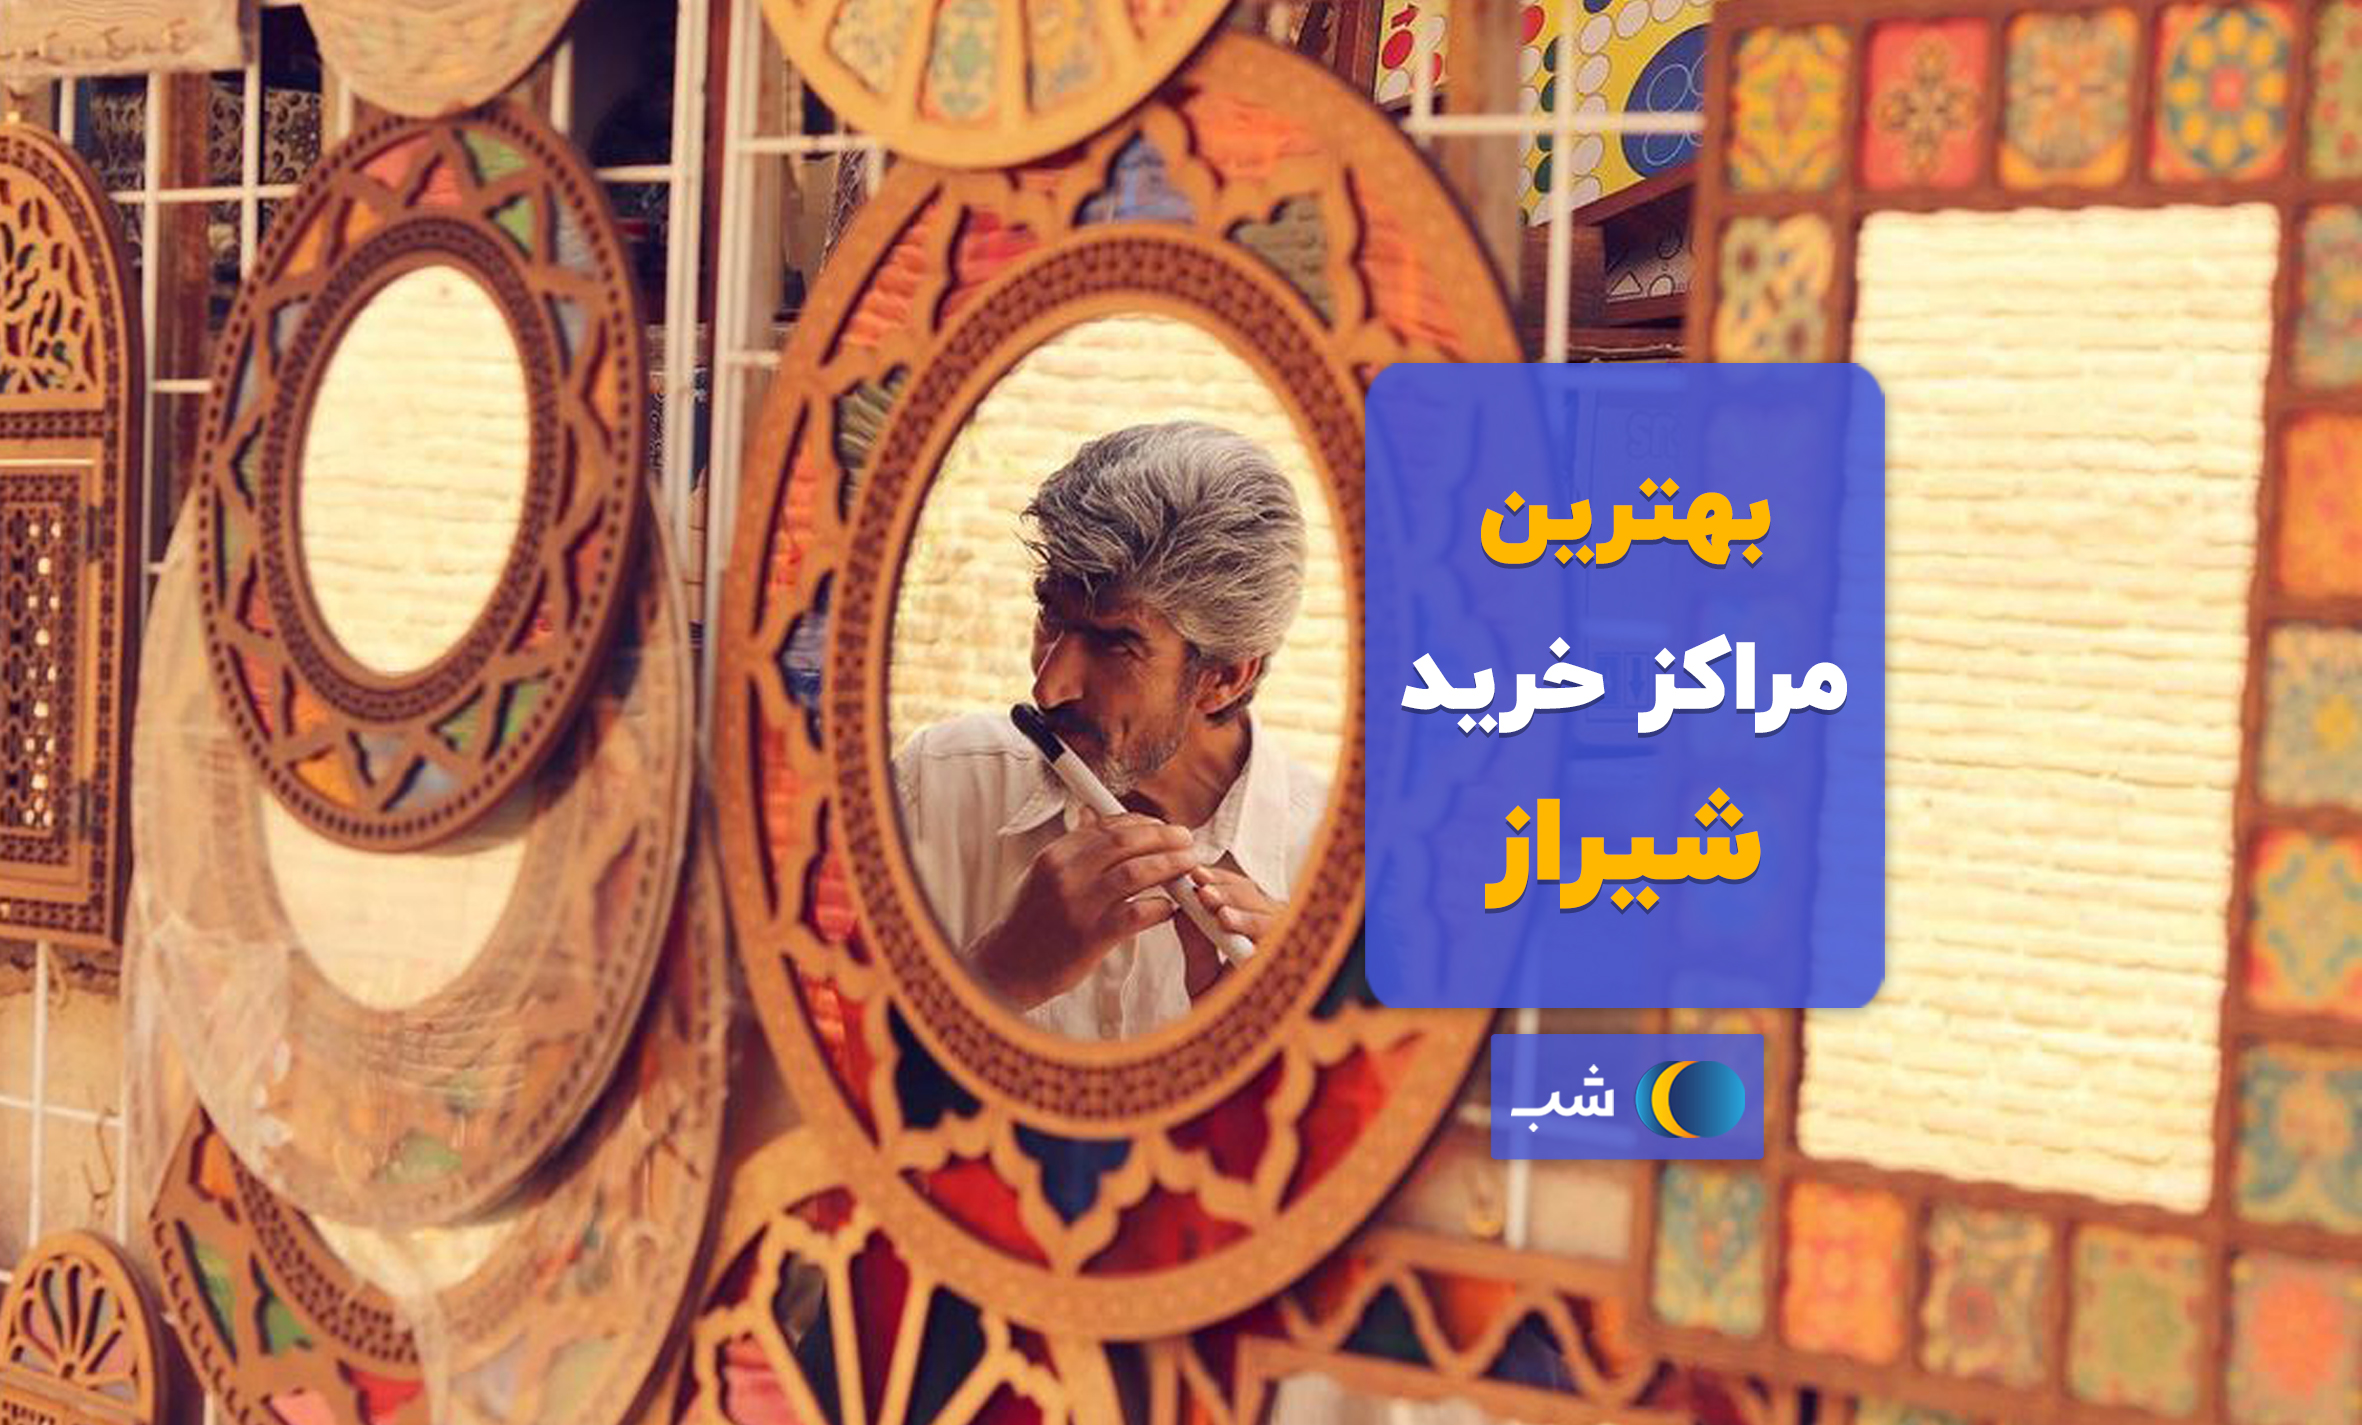 بهترین بازارها و مراکز خرید شیراز